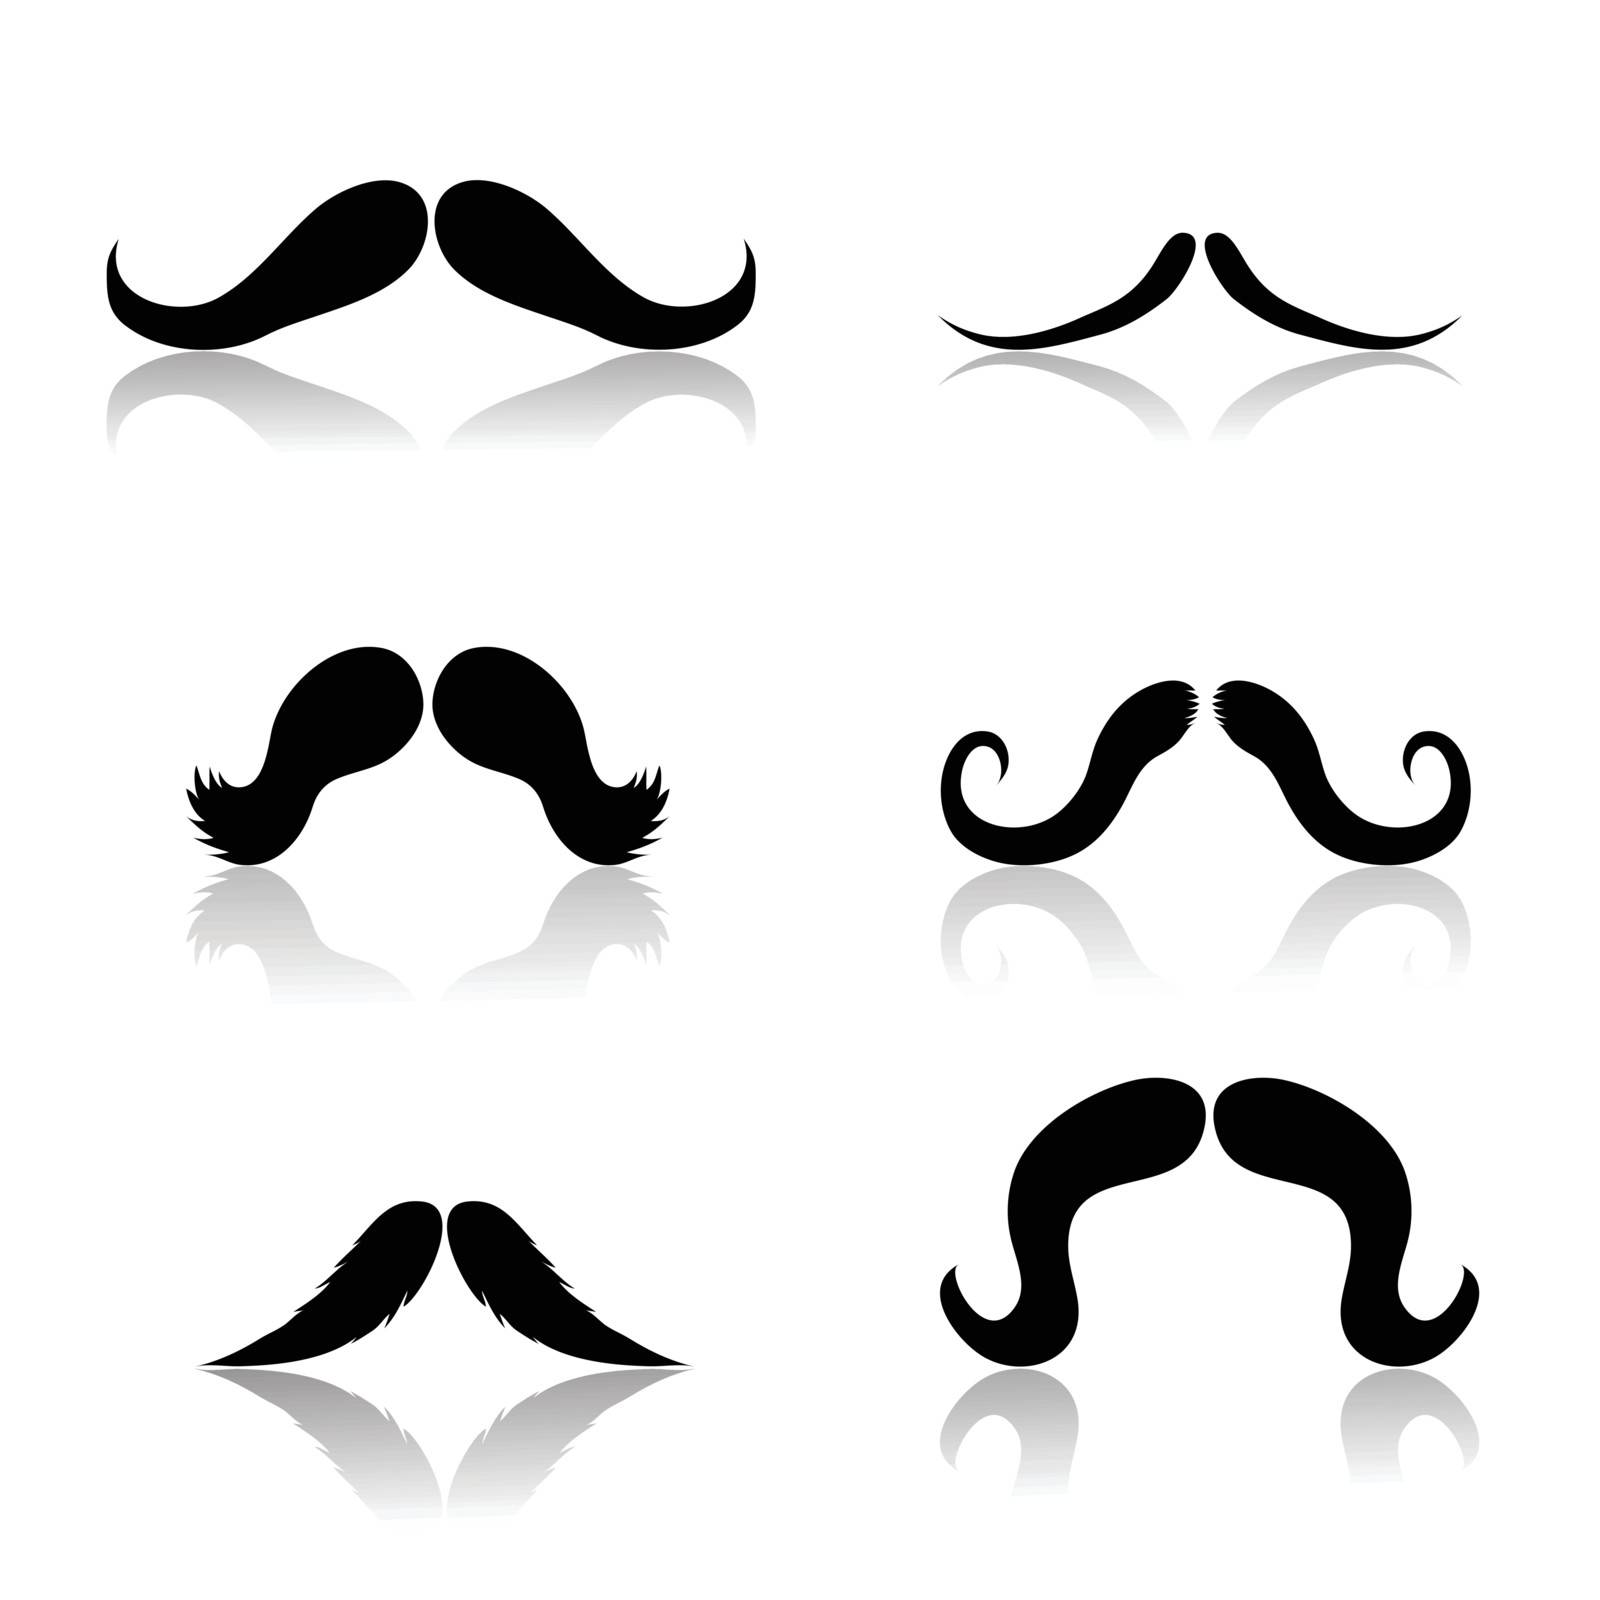  mustache by valeo5